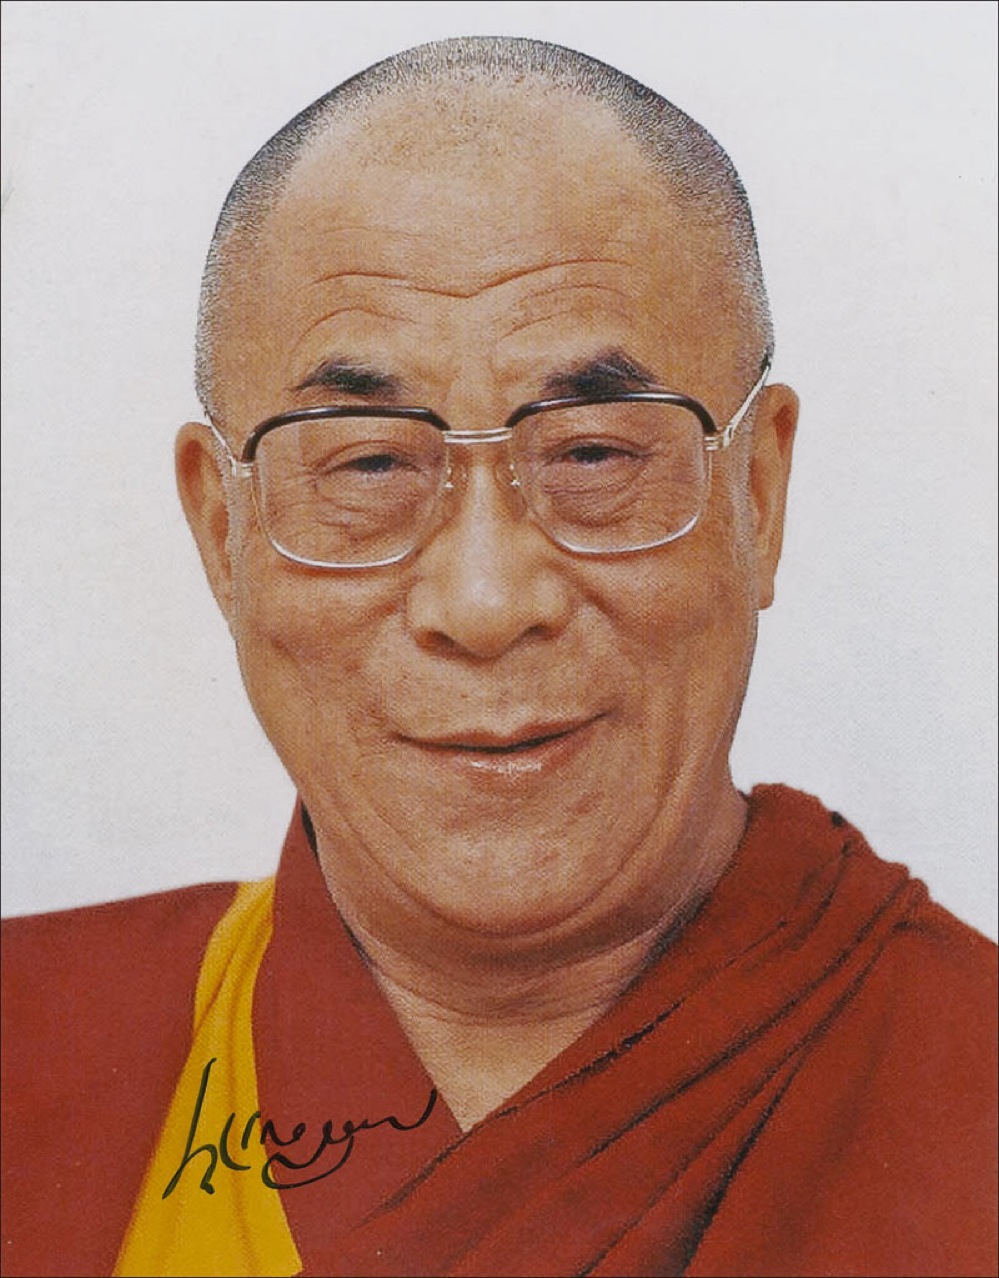 Lot #176 Dalai Lama